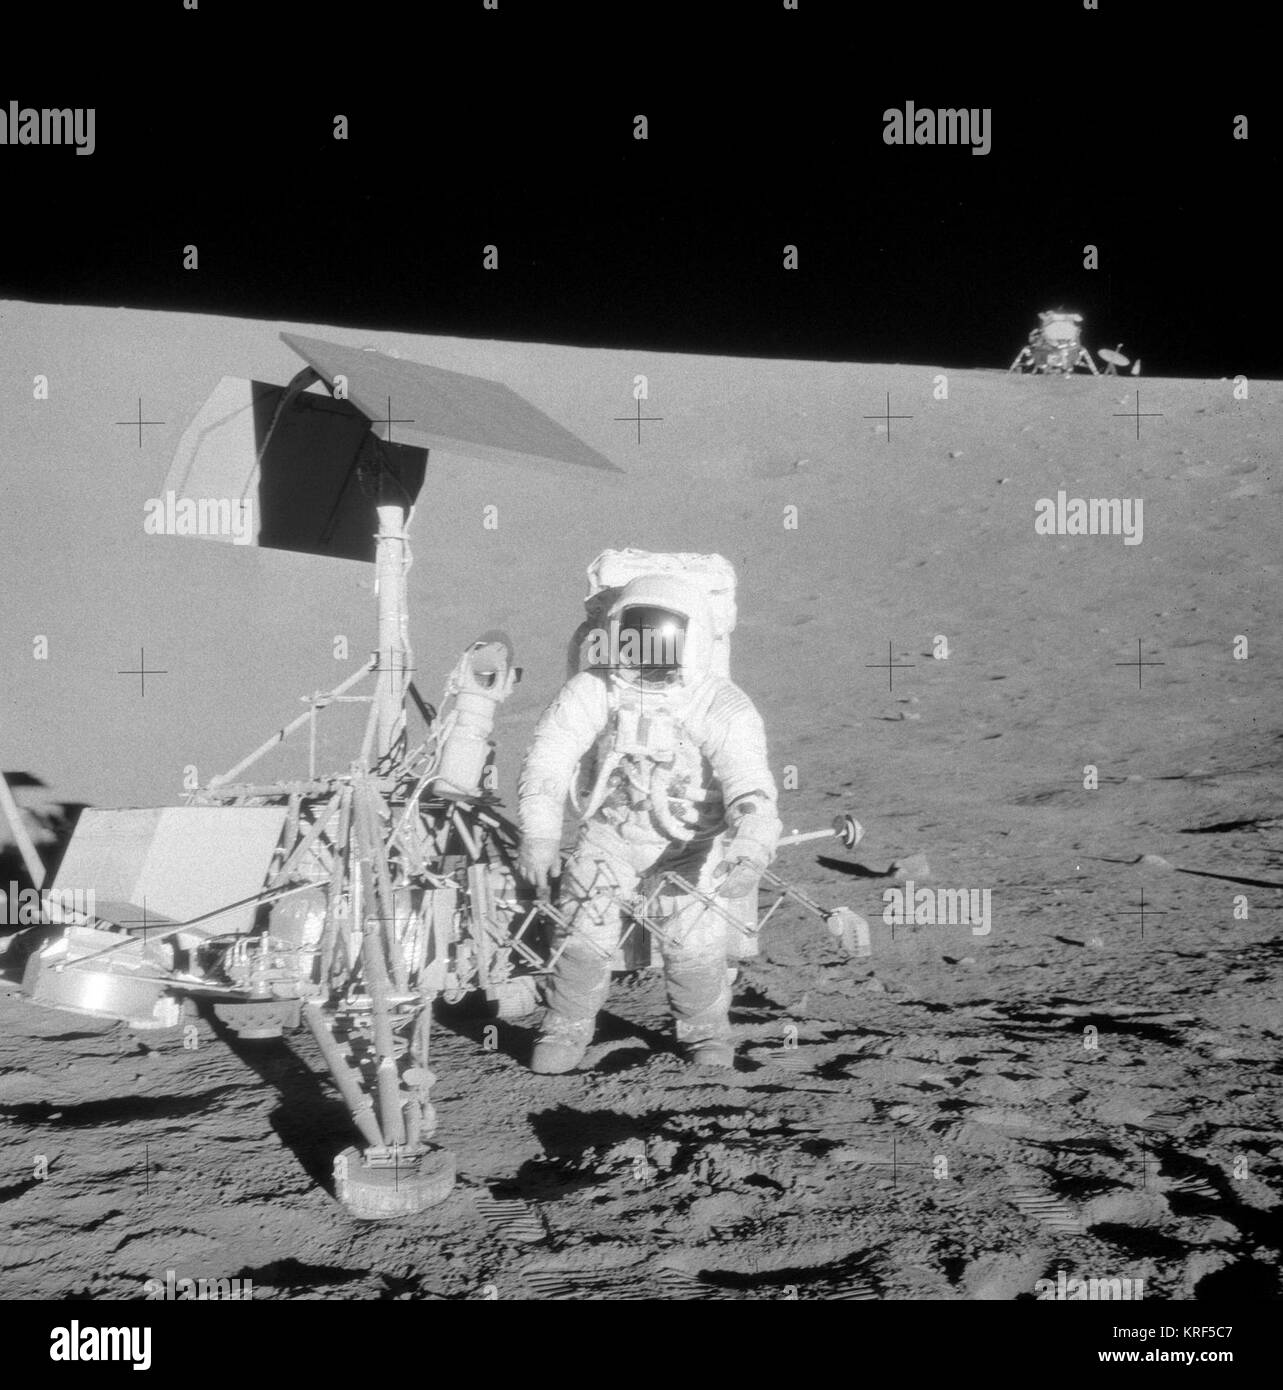 Apollo 12 and Surveyor 7135 Stock Photo